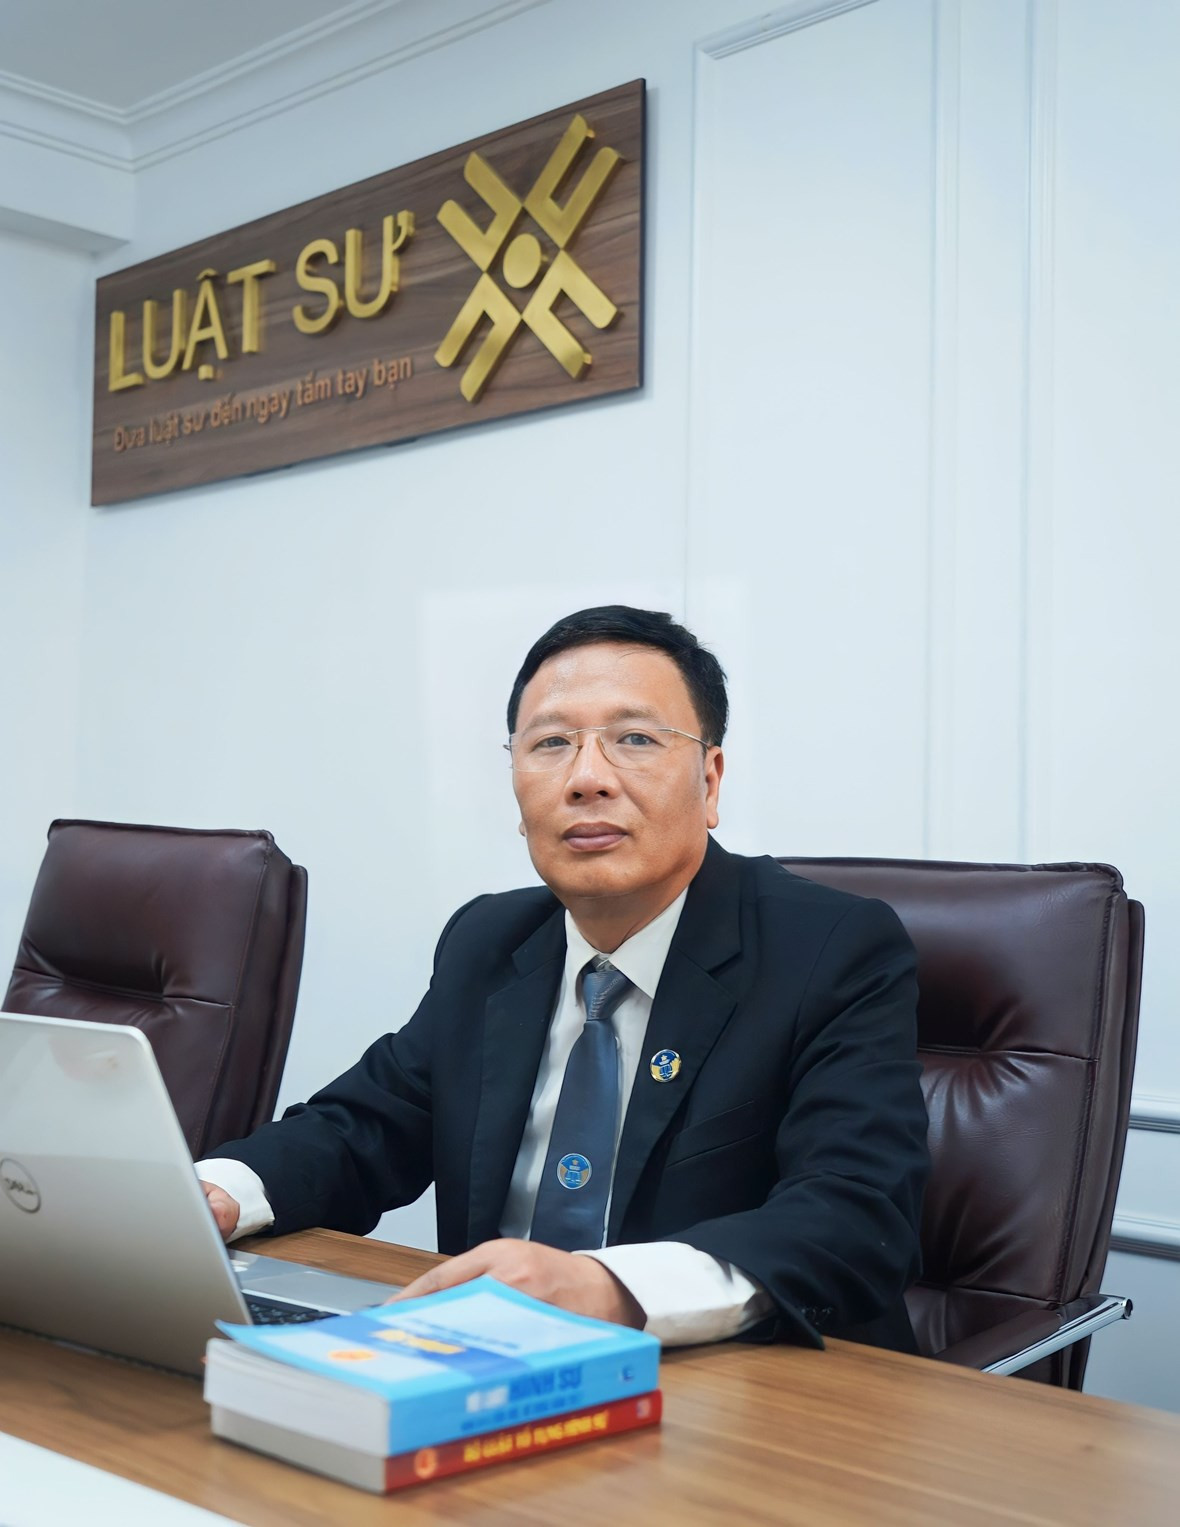 luật sư Bùi Xuân Lai (Công ty Luật TNHH hệ thống dịch vụ pháp lý Luật sư X)